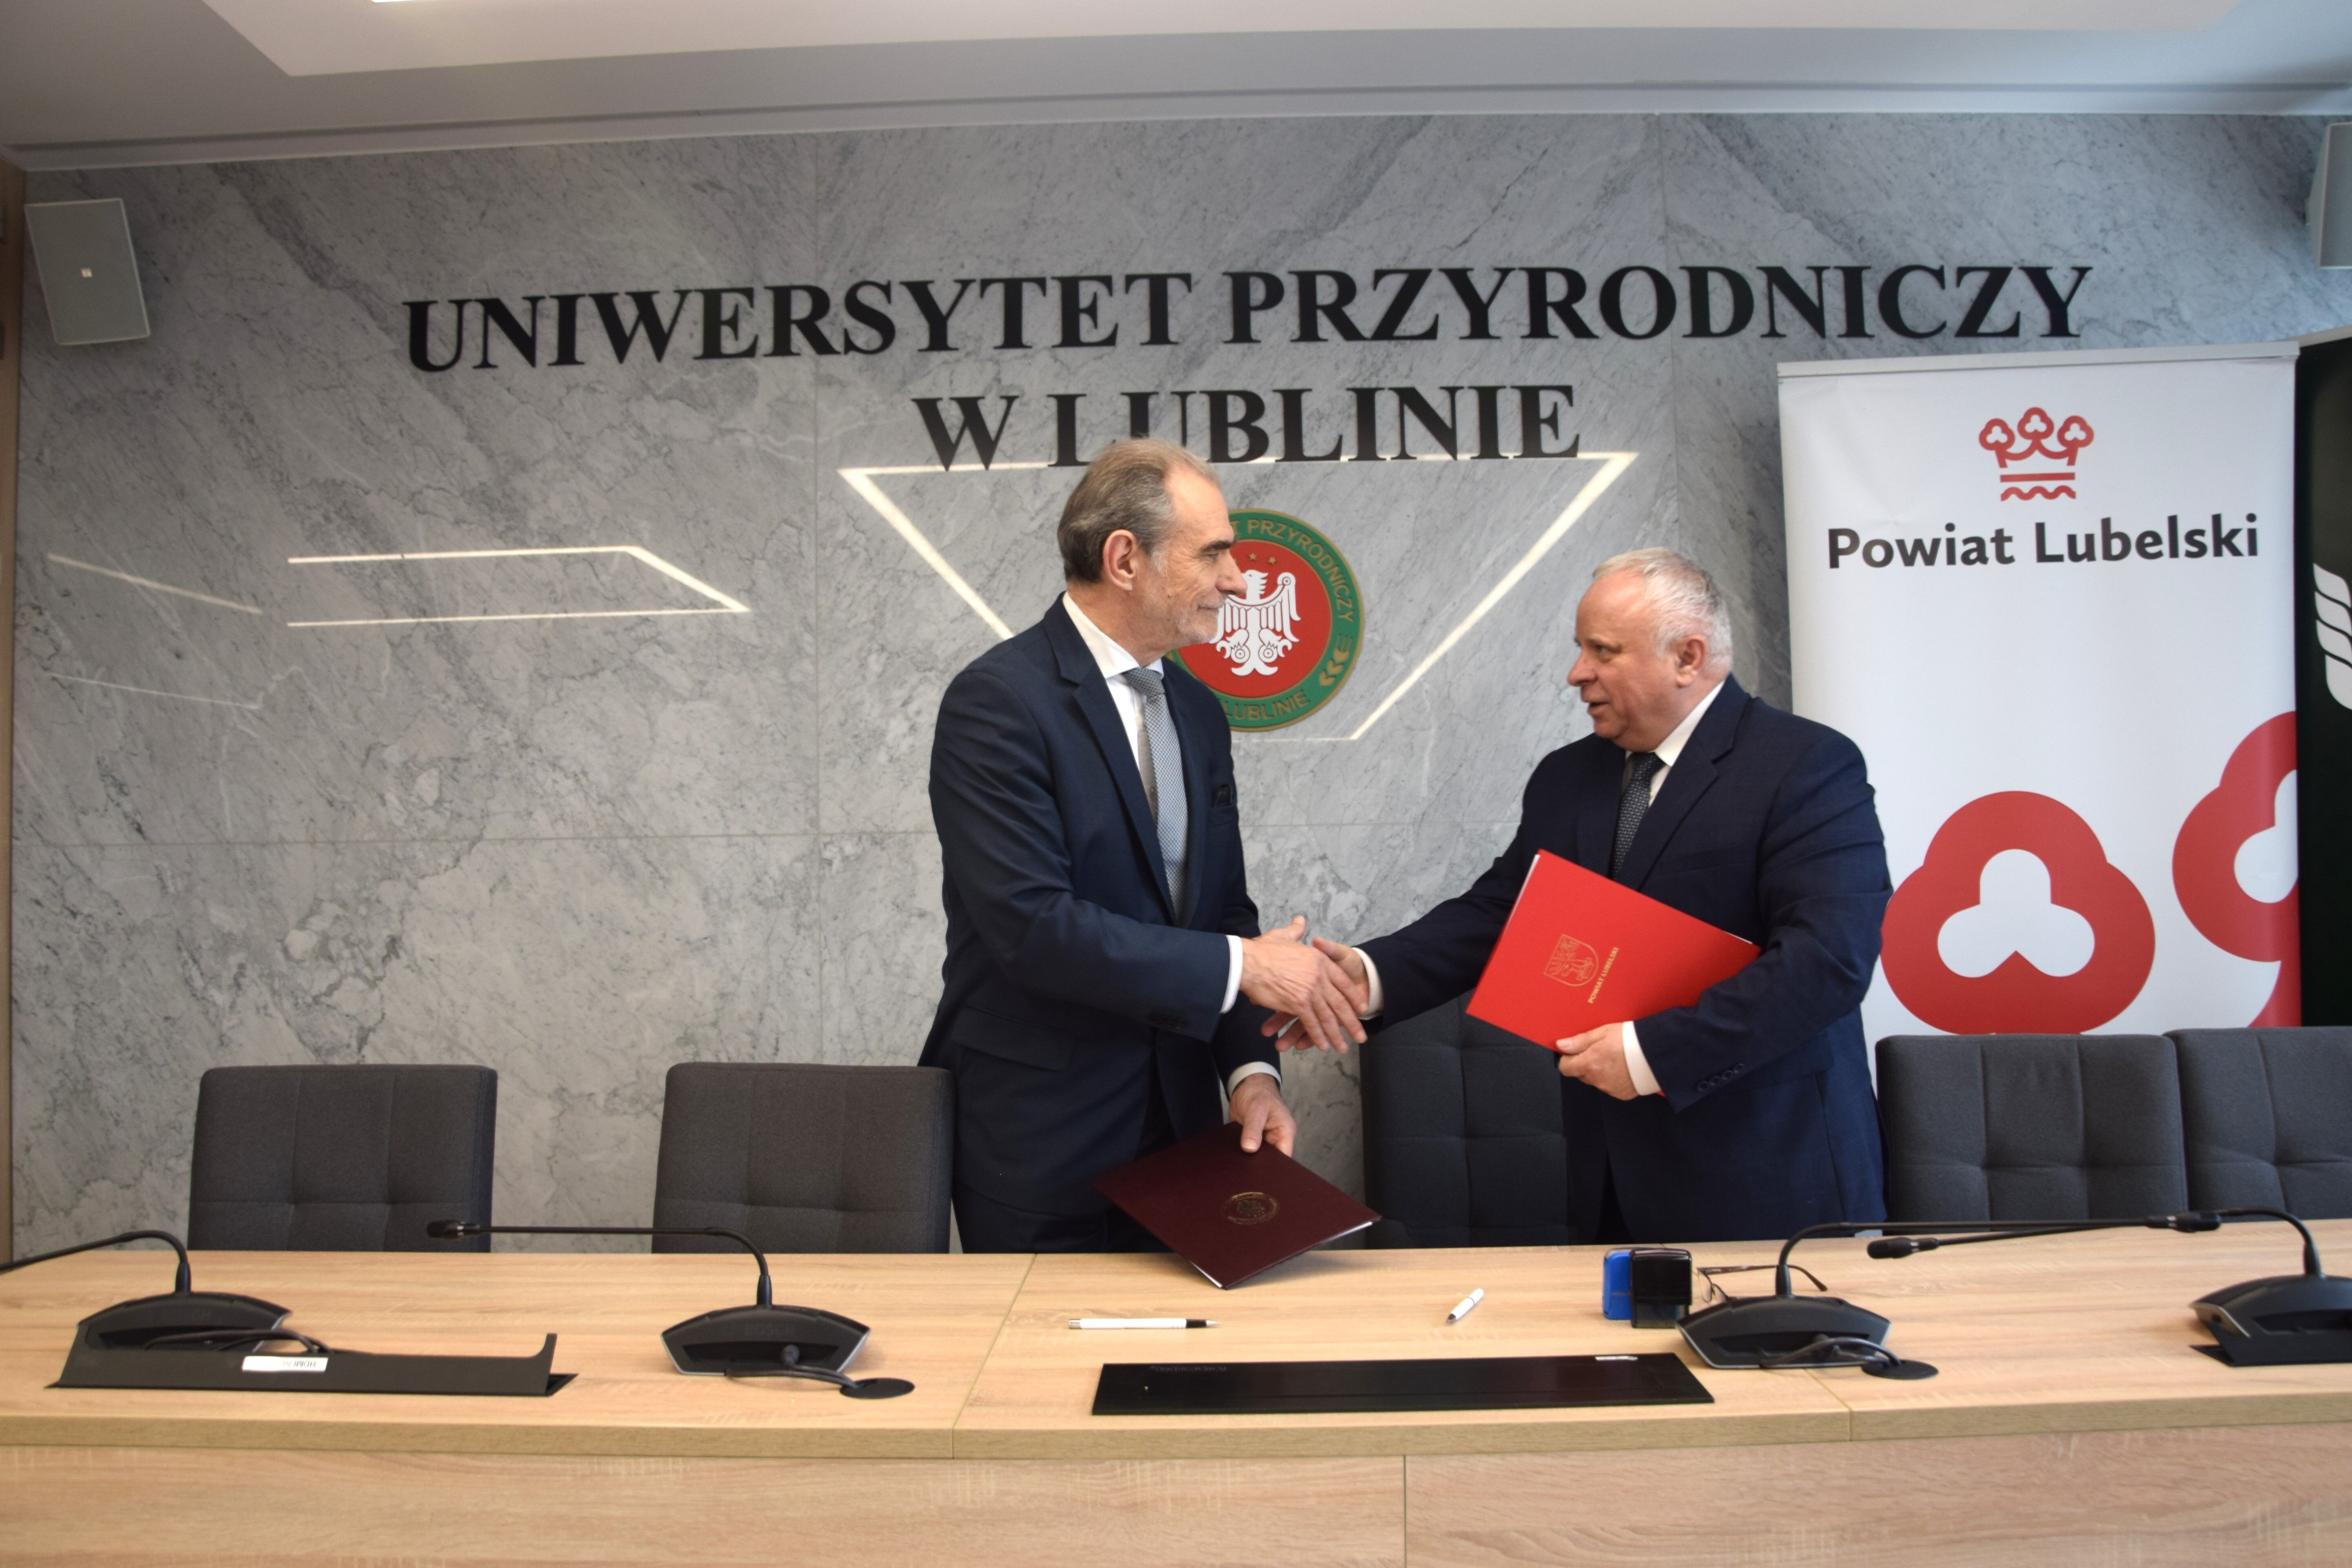 Dwóch mężczyzn w garniturach uściskuje sobie dłonie w sali konferencyjnej, po obu stronach stołu z mikrofonami, za nimi ściana z logo Uniwersytetu Przyrodniczego w Lublinie i Powiatu Lubelskiego.